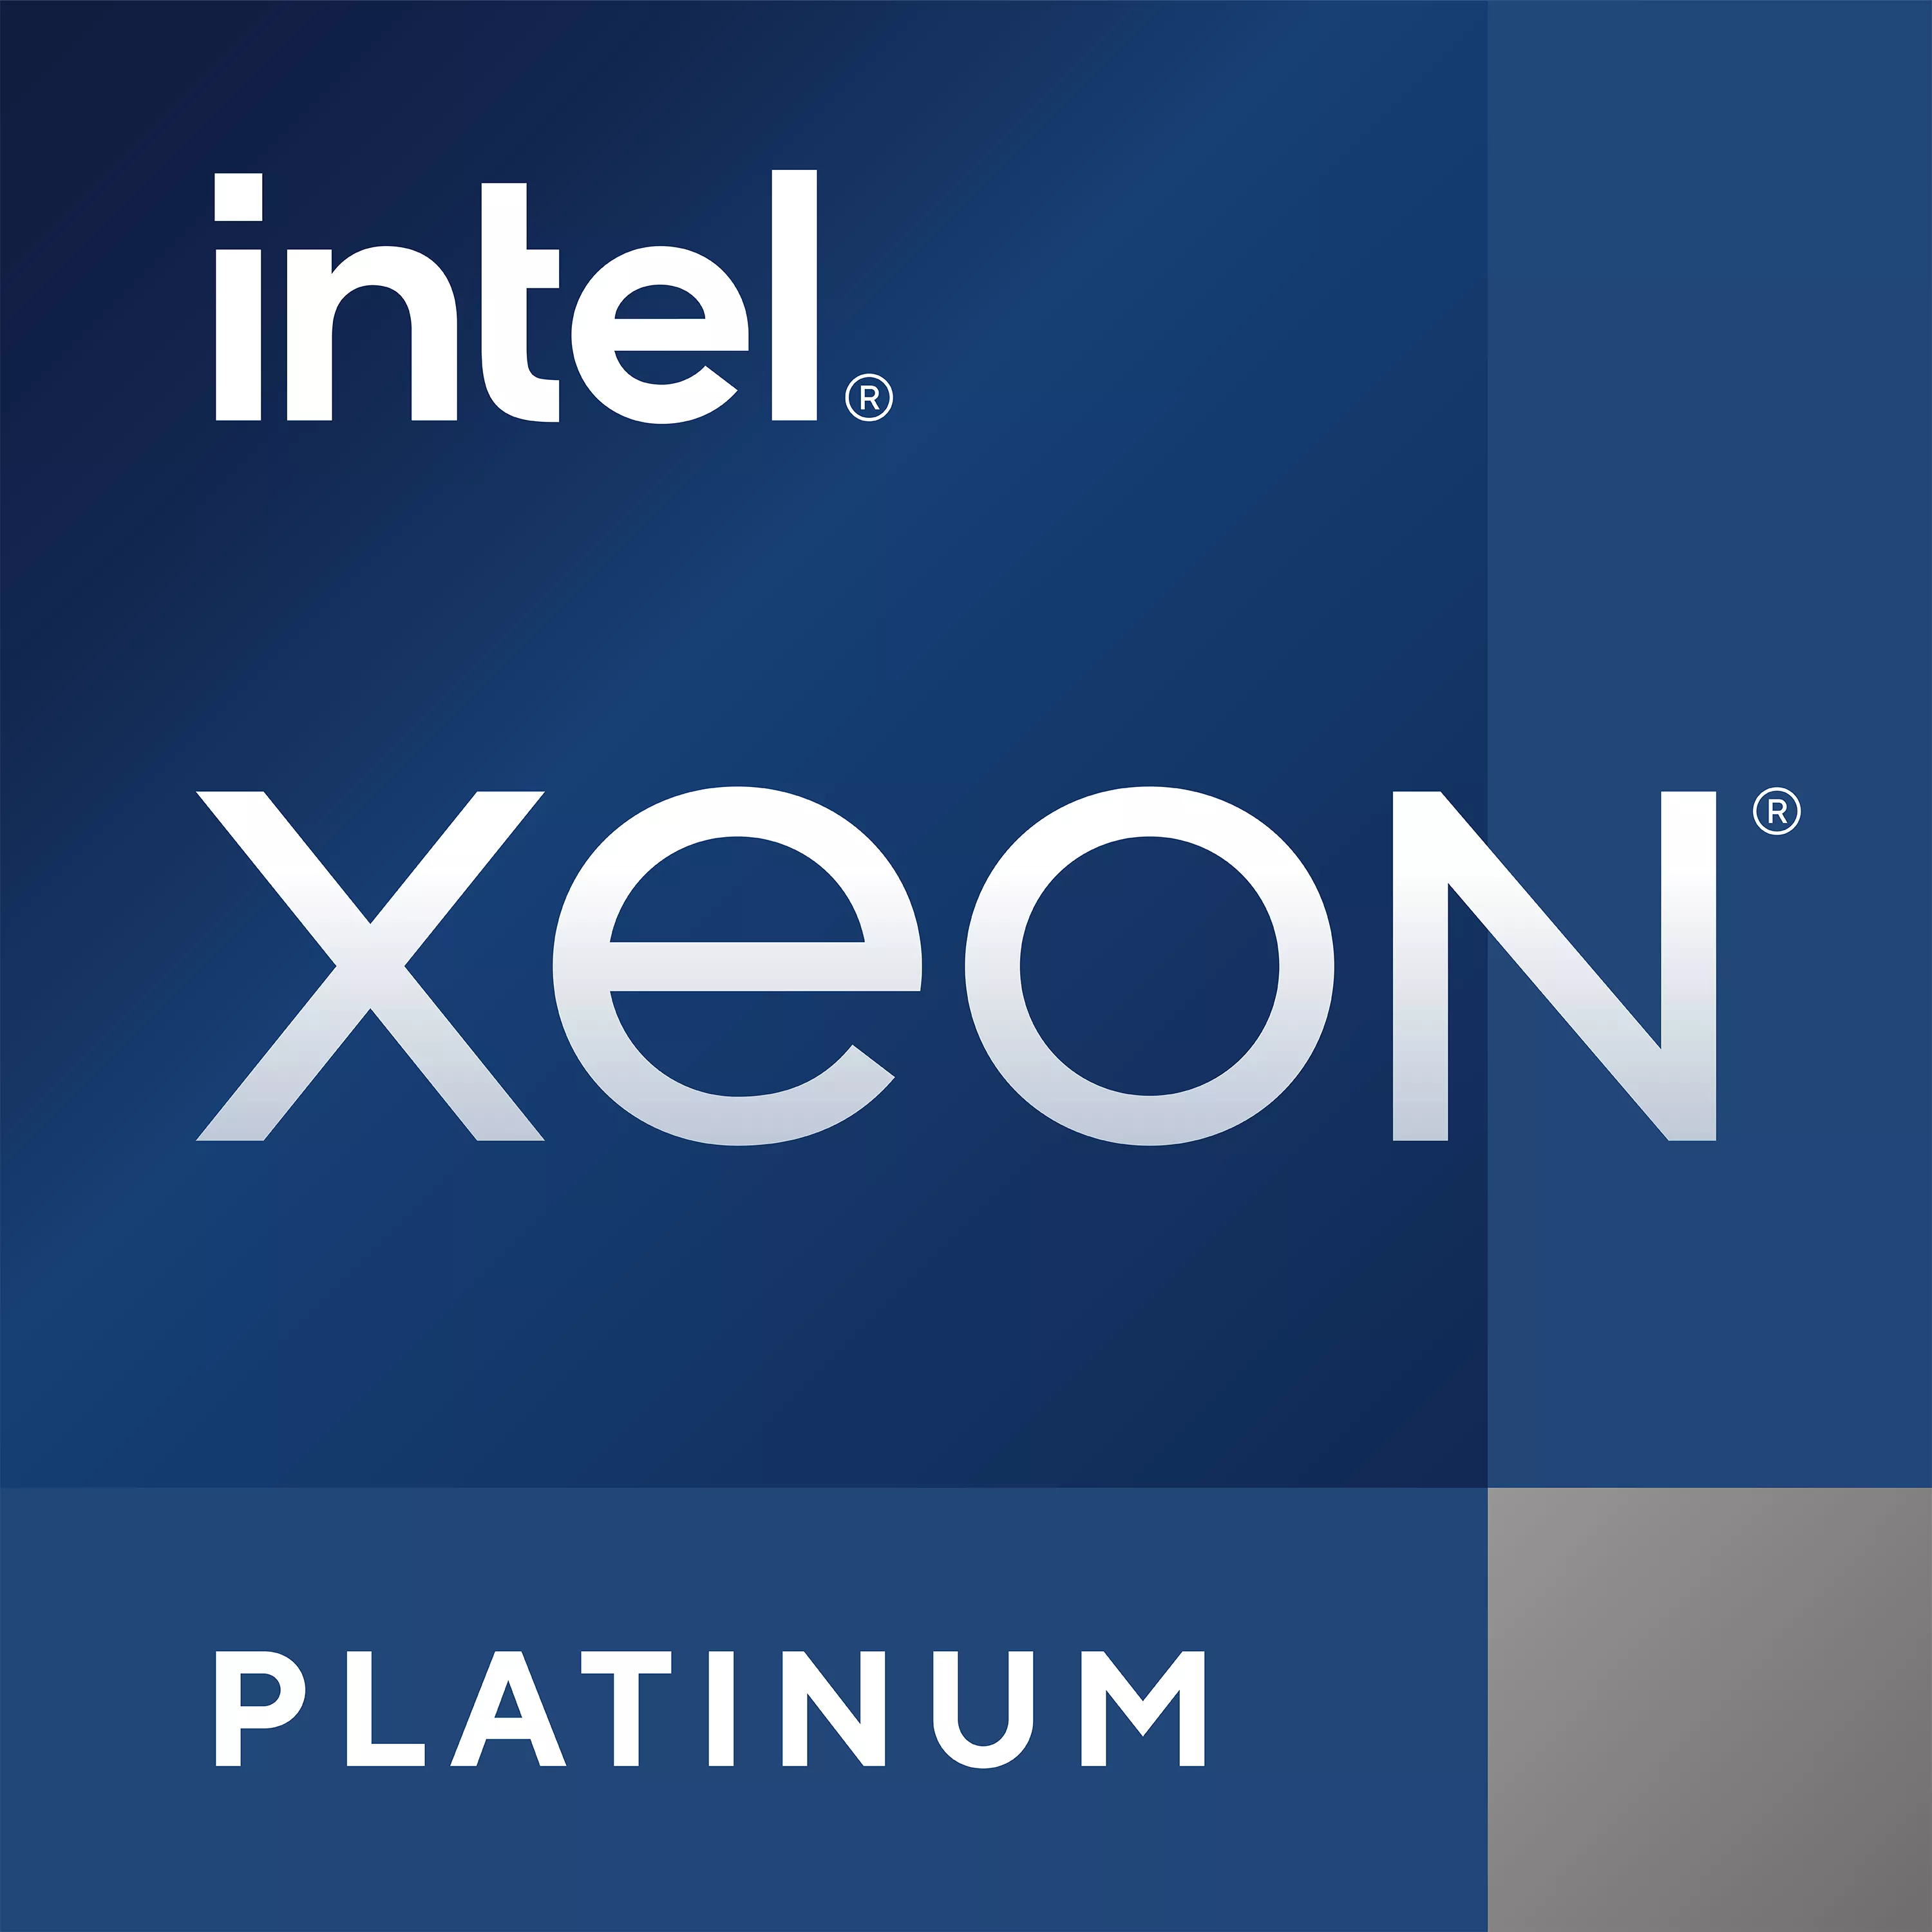 Achat Intel Xeon Platinum 8360Y au meilleur prix